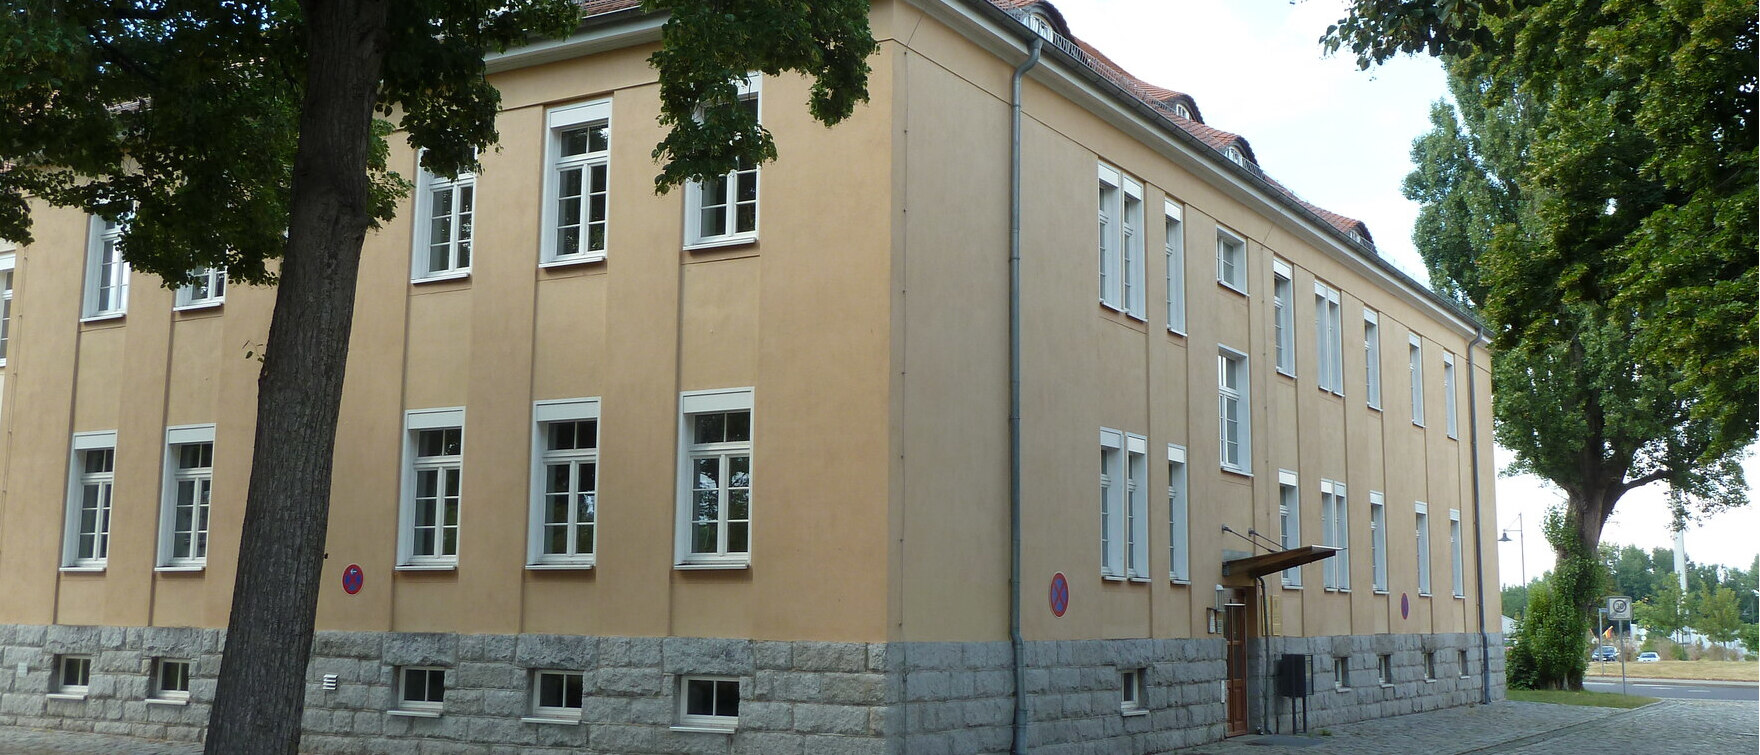 Das Bild zeugt das Dienstgebäude in Kamenz.